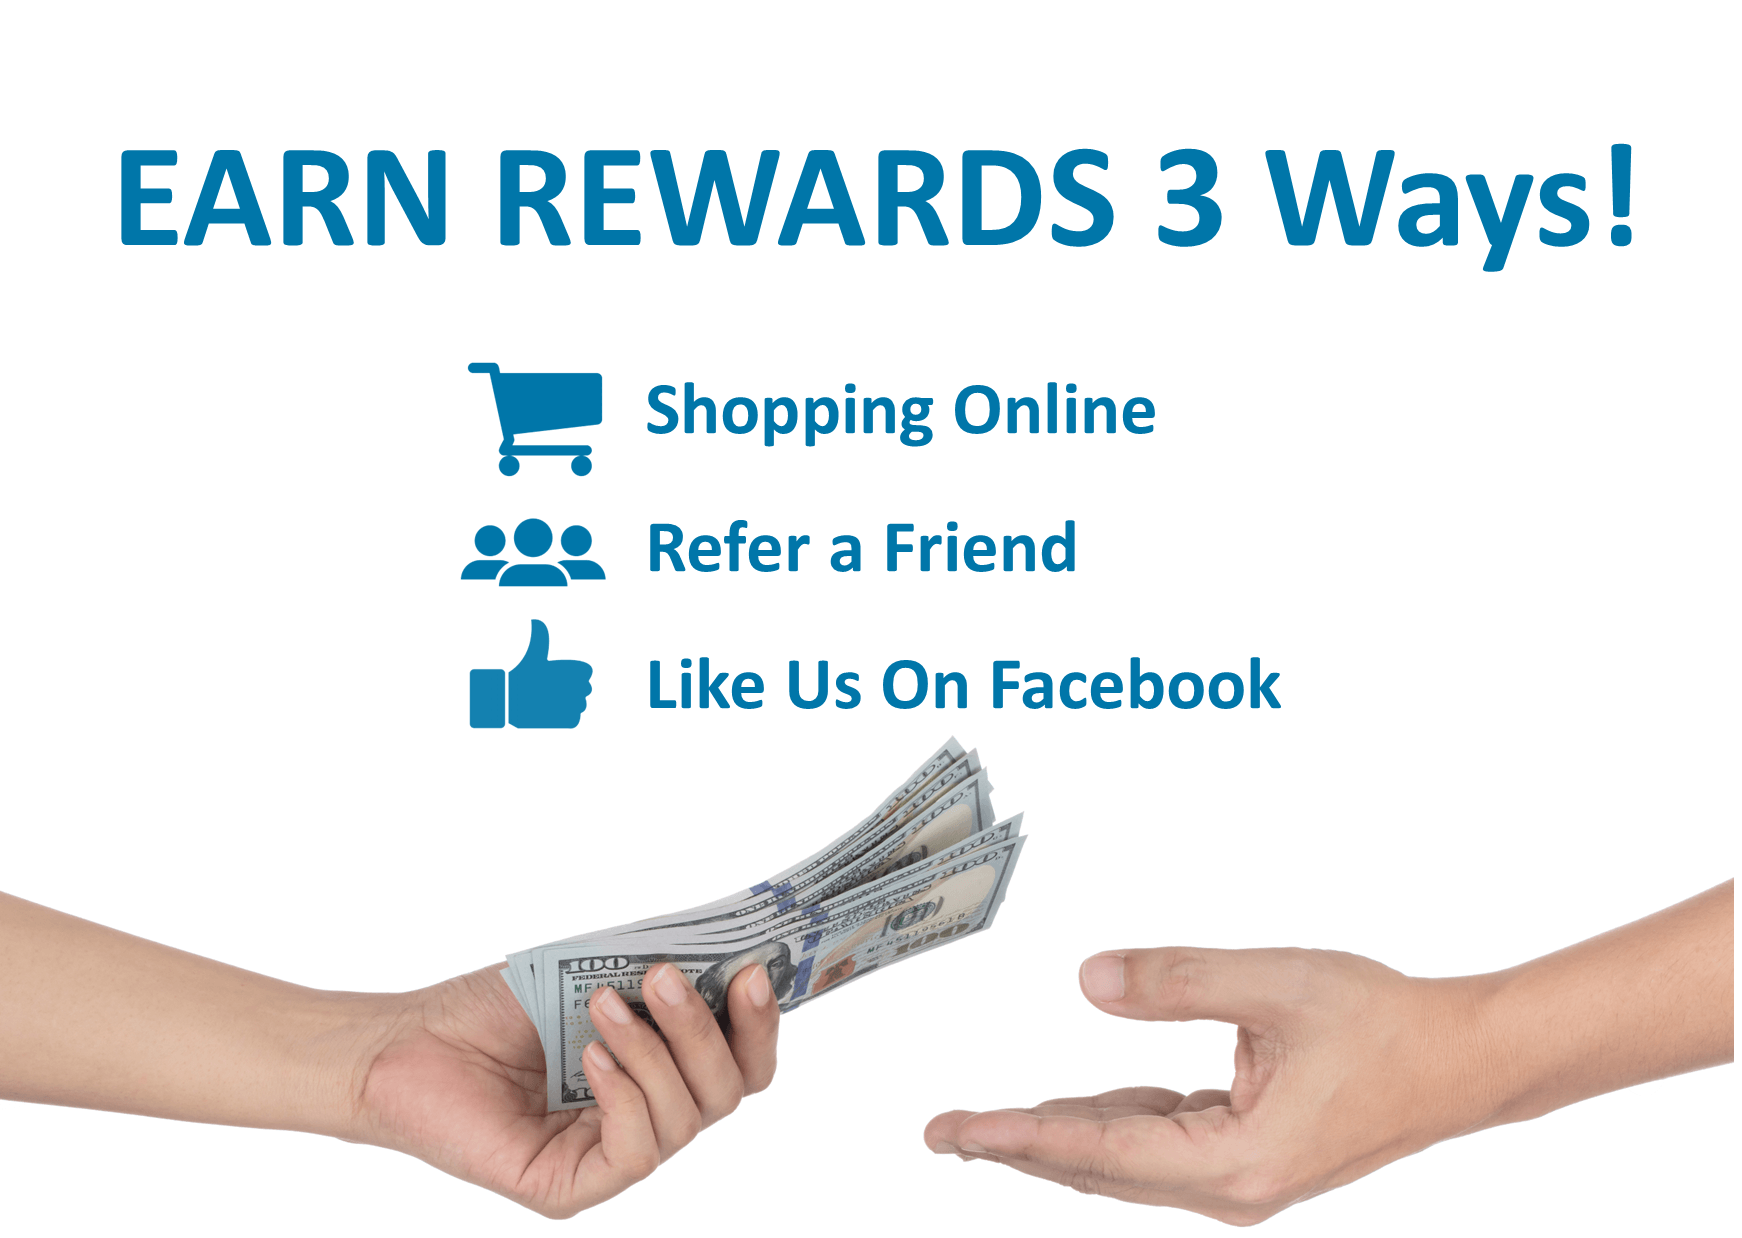 Earn Rewards 3 Ways!